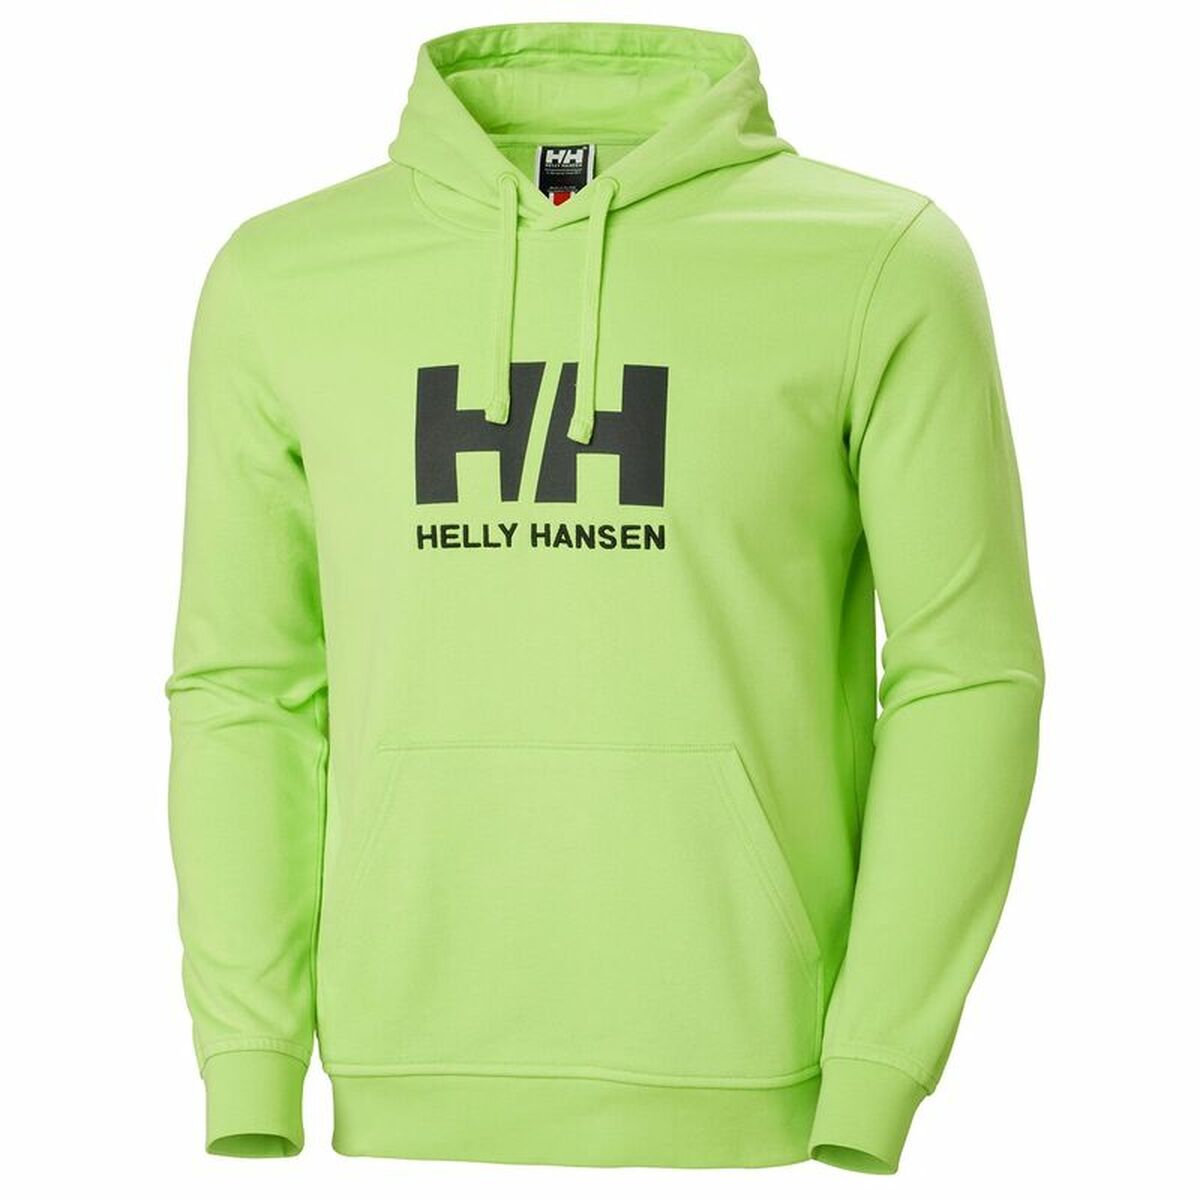 Kaufe Herren Sweater mit Kapuze HH LOGO Helly Hansen 33977 395 grün bei AWK Flagship um € 85.00